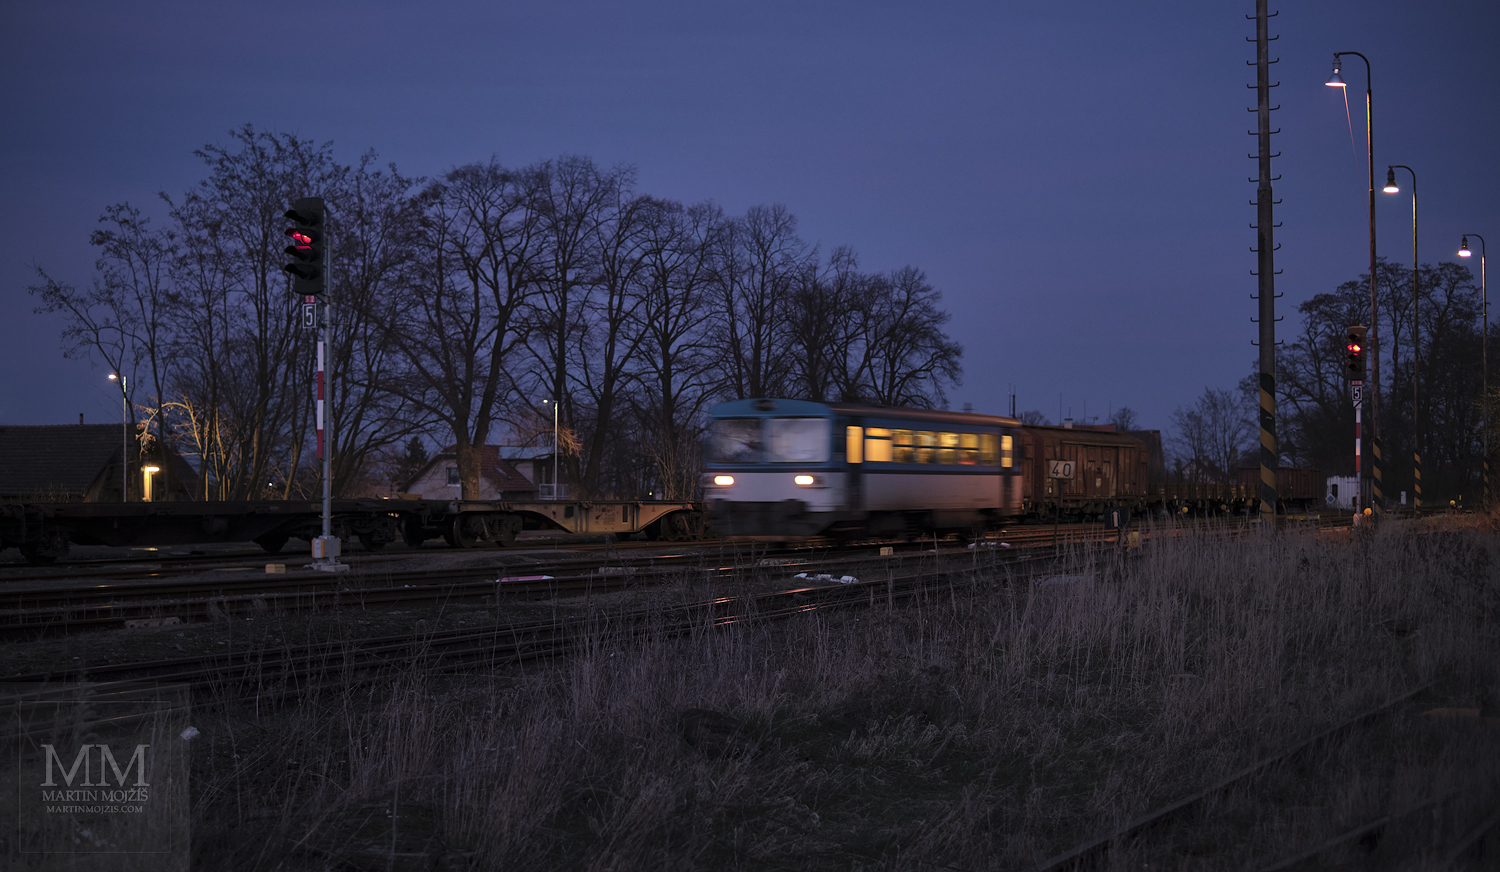 Velkoformátová umělecká fotografie motorového vlaku přijíždějícího na nádraží za soumraku. Martin Mojžíš.